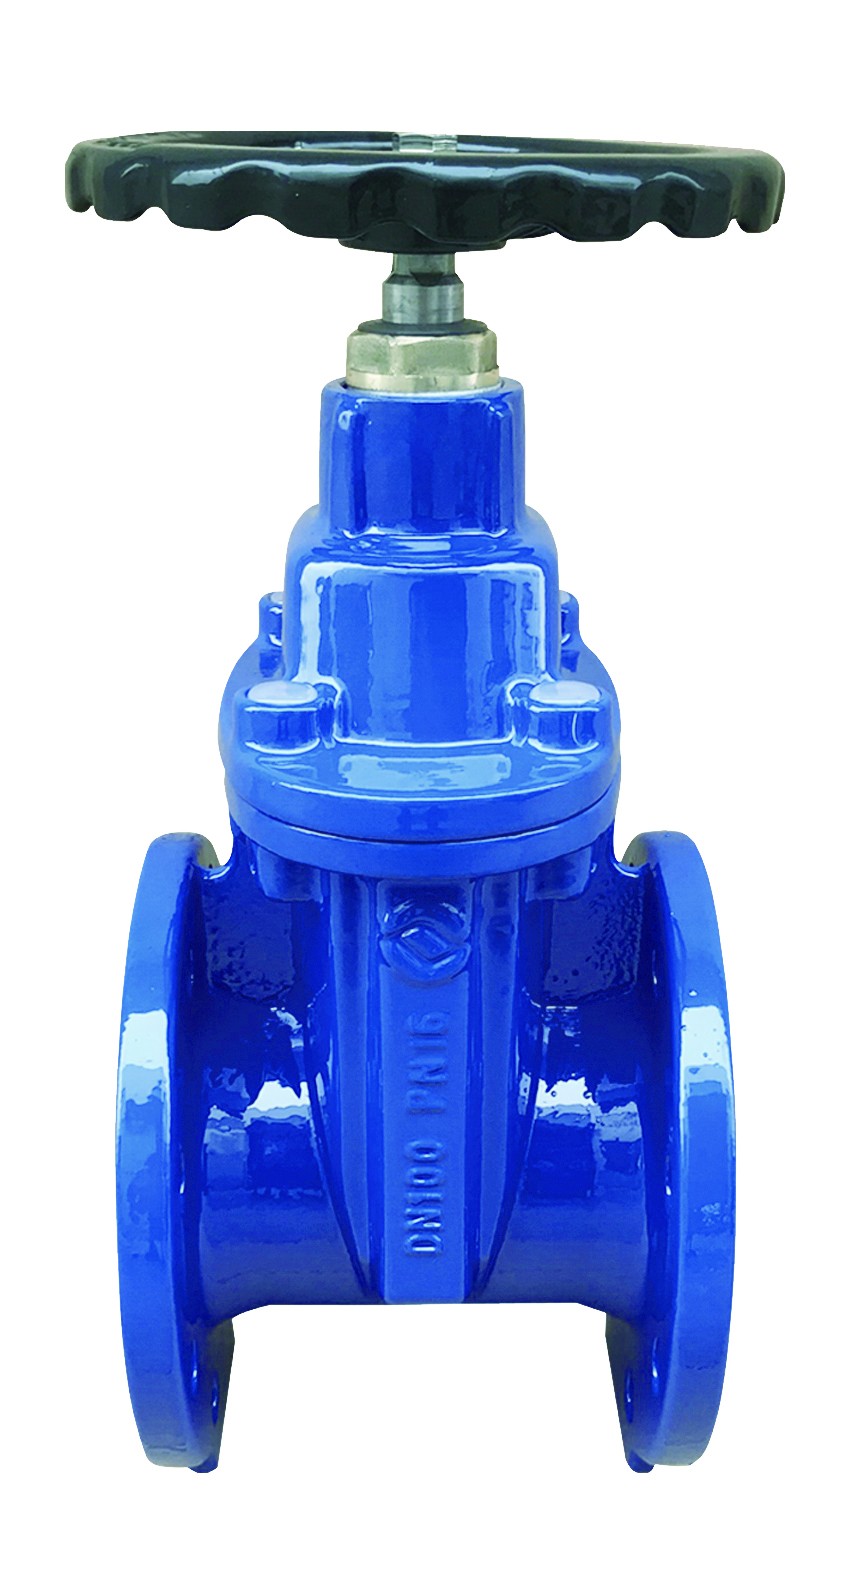 Rexroth SV10GA1-4X/        check valve